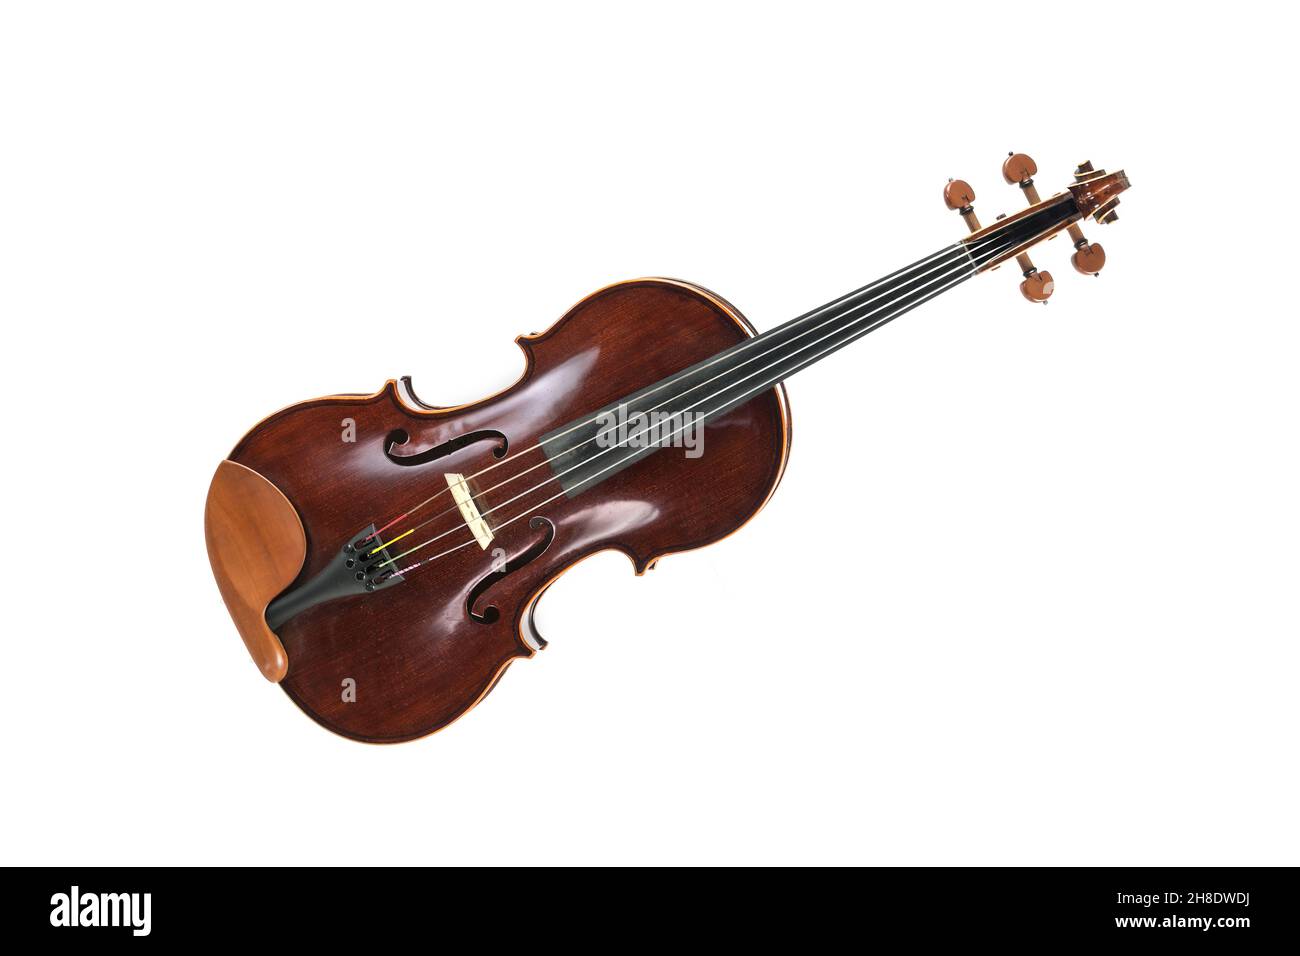 Viola, ein Streichinstrument aus der Familie der Gambe, das in Streichquartett, Kammermusik und Sinfonieorchester verwendet wird, isoliert auf einem weißen Backgroun Stockfoto